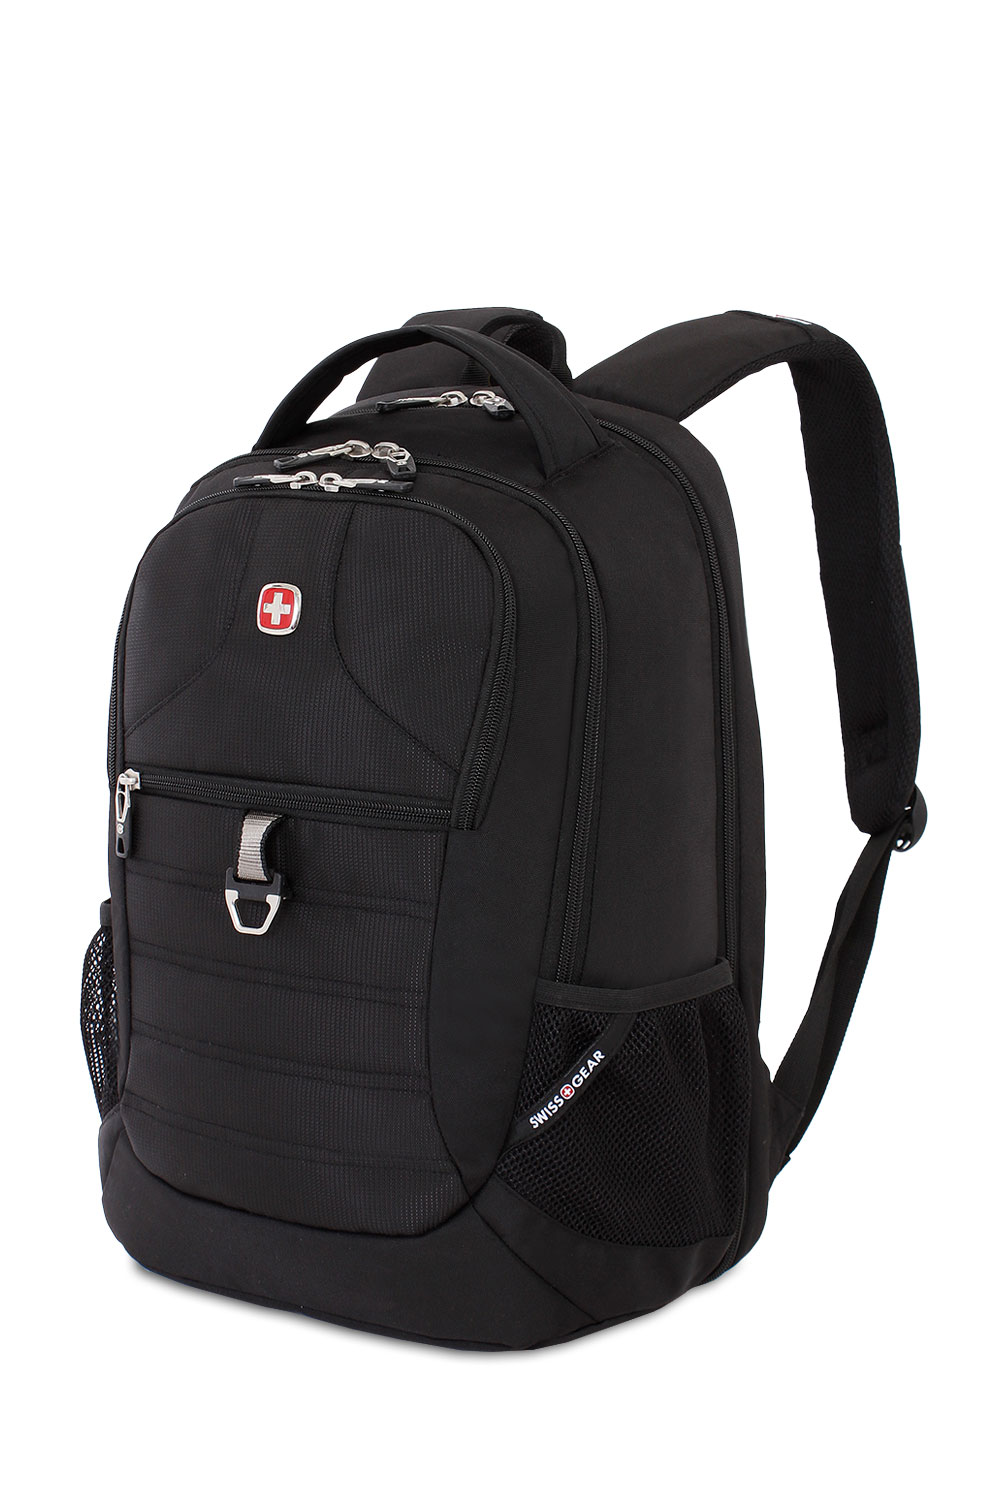 Swissgear 1753 ScanSmart Laptop Backpack - Black